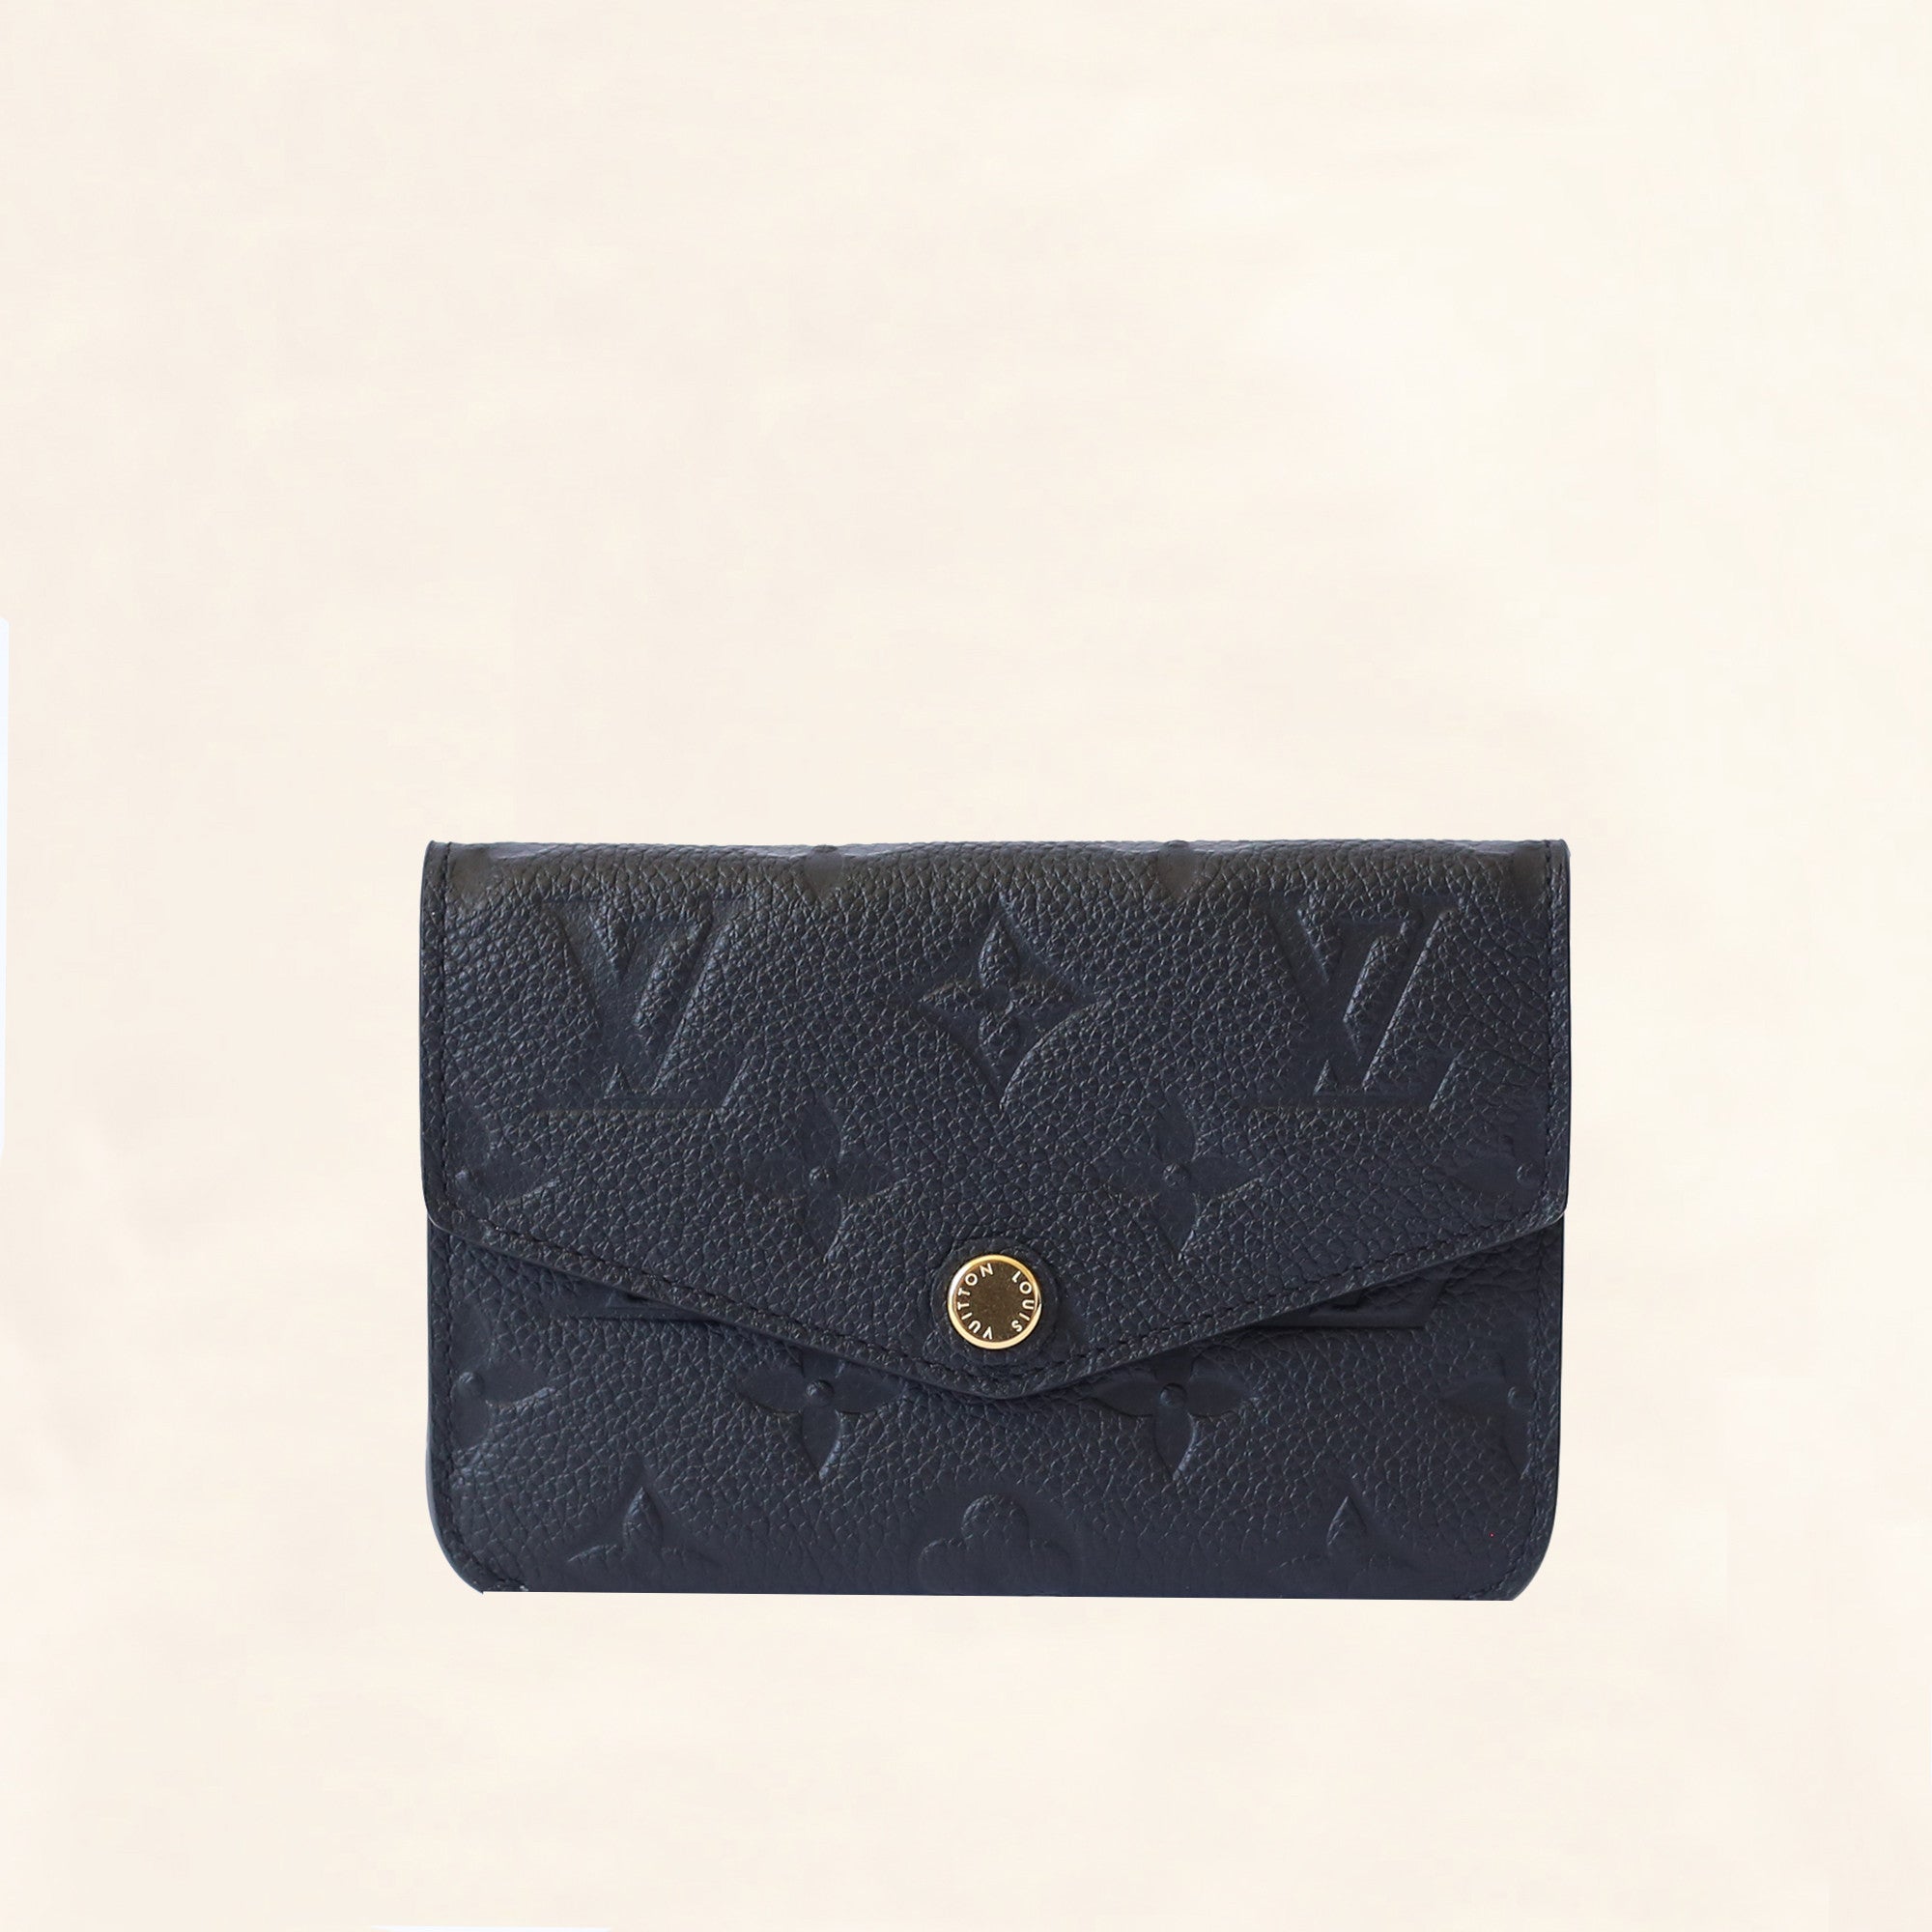 Louis Vuitton Monogram Key Pouches products for sale